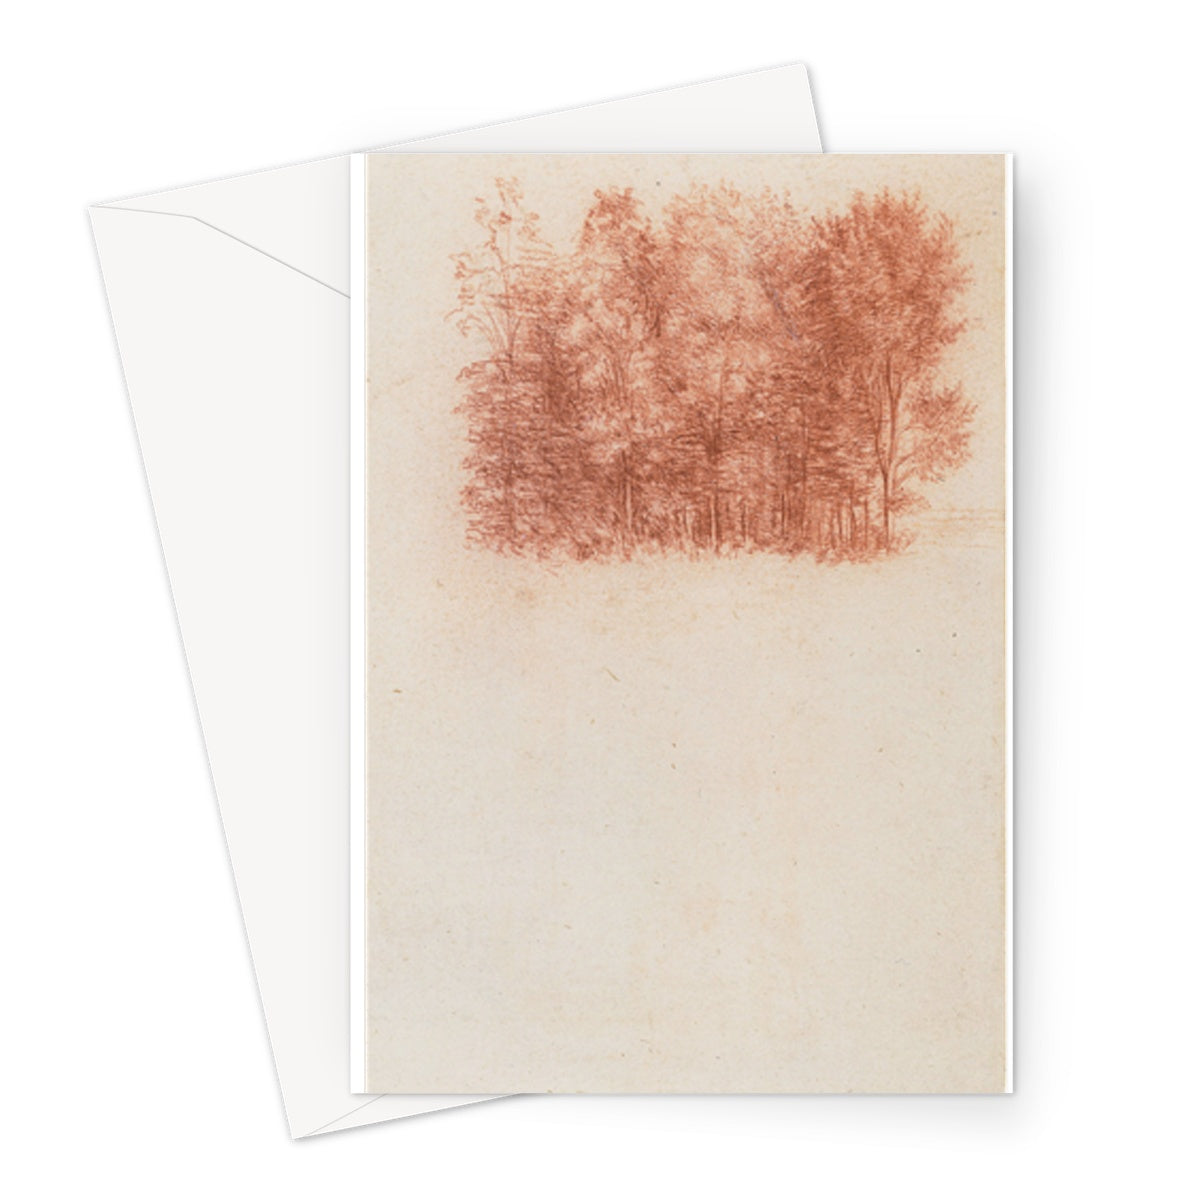 Un dessin d'un peuplement d'arbres par Léonard de Vinci, vers 1500 - Carte de vœux